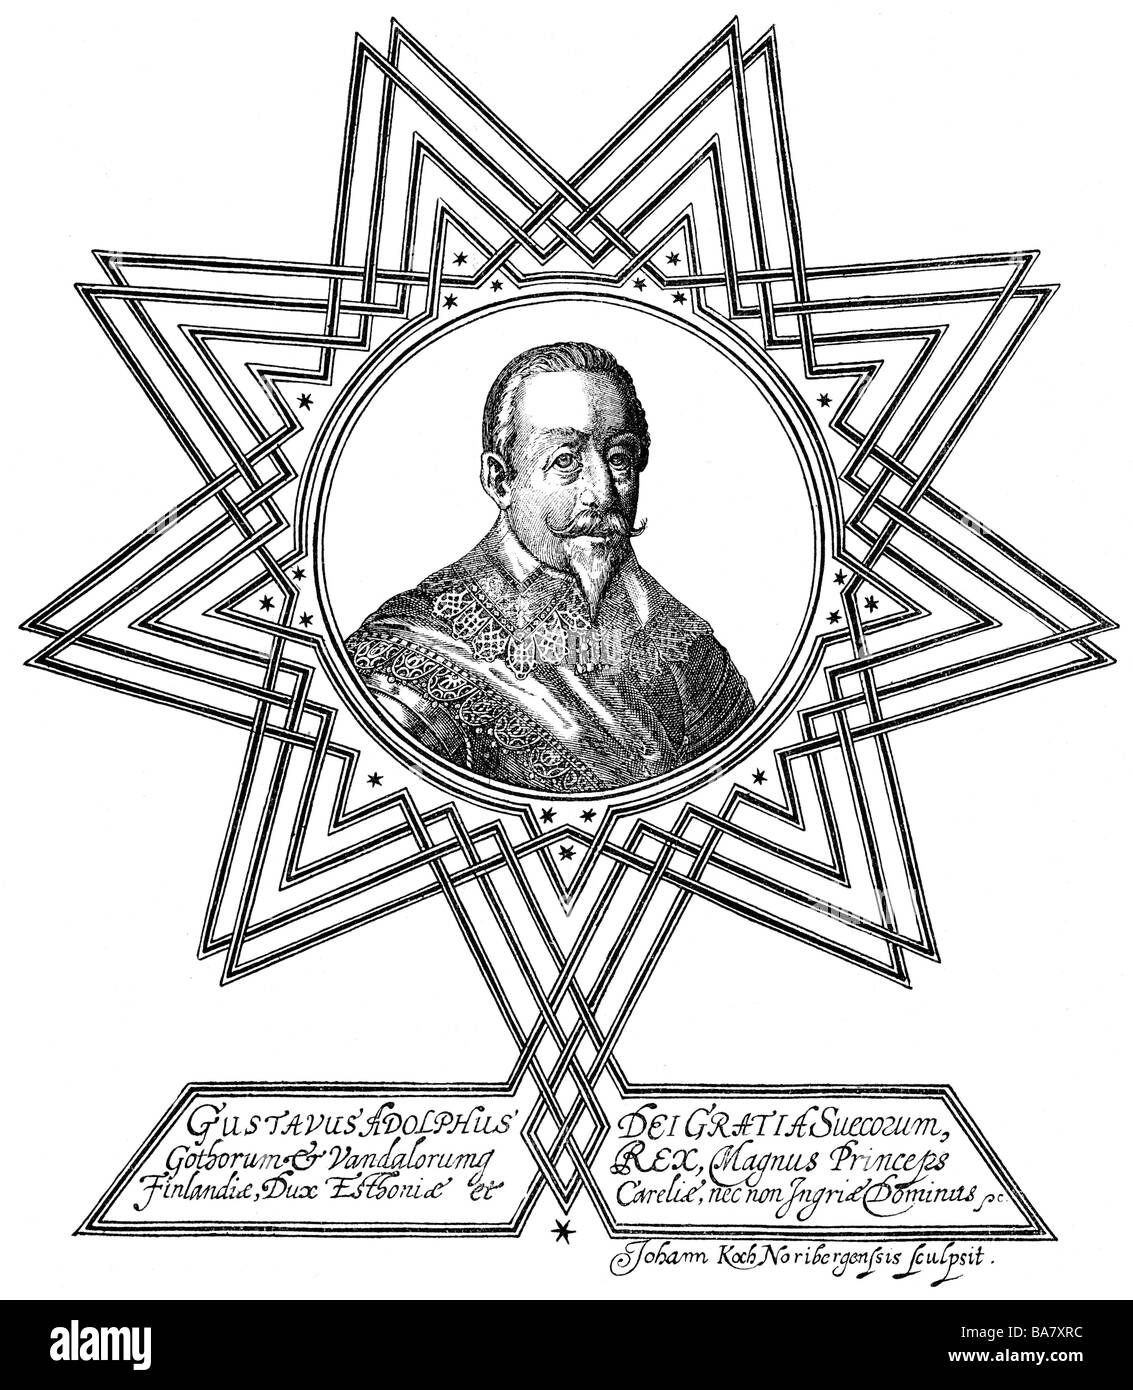 Gustave-adolphe, 19.12.1594 - 16.11.1632, le Roi de l'artiste , Copyright n'a pas à être effacée Banque D'Images